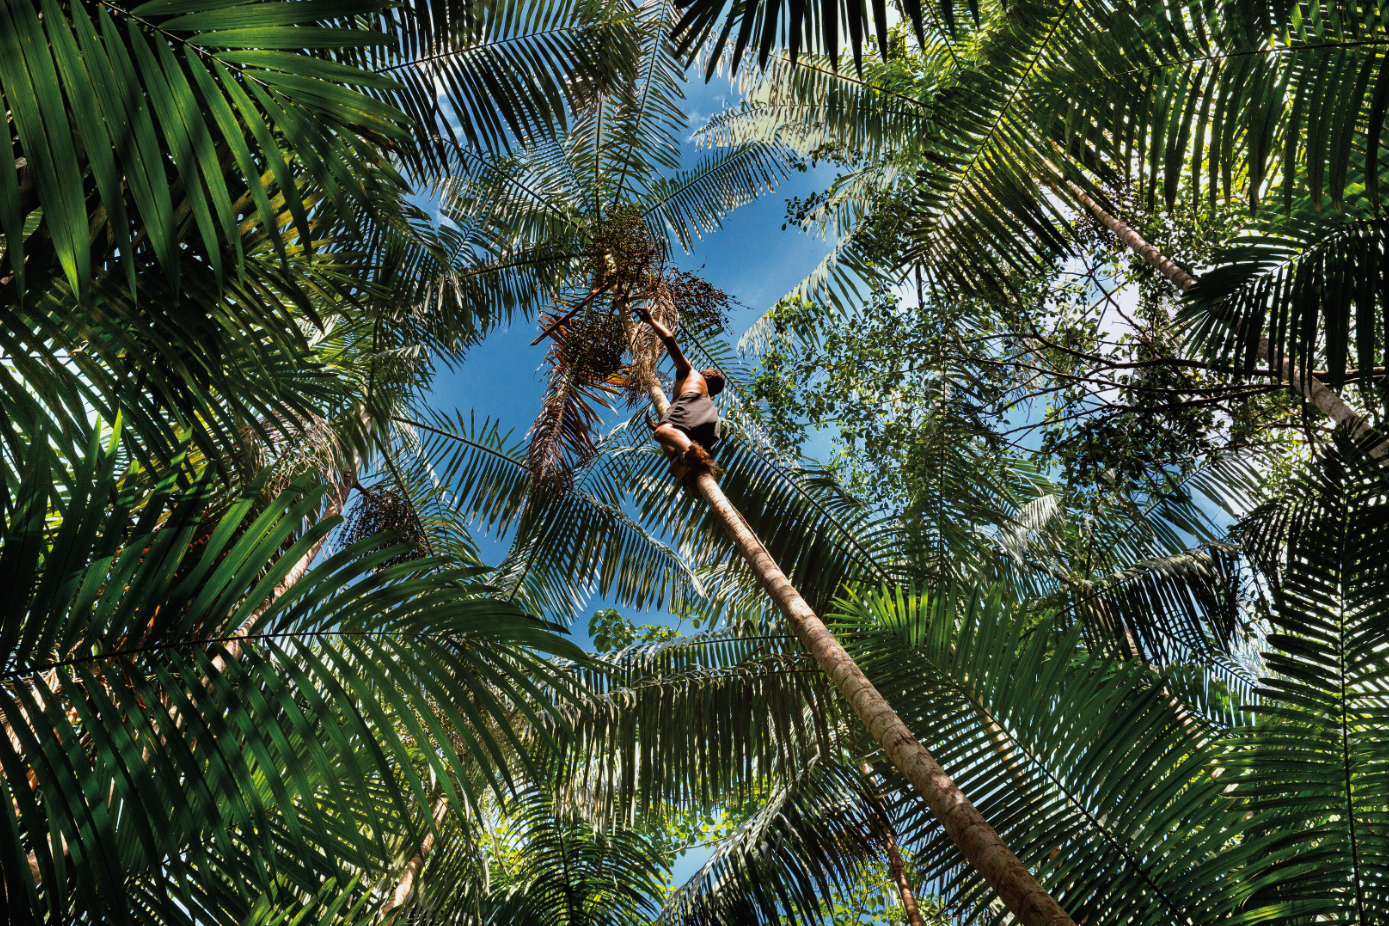 Uma imagem mostra diversos coqueiros da Amazônia vistos de baixo. No topo de um dos coqueiros, há uma criança o escalando.